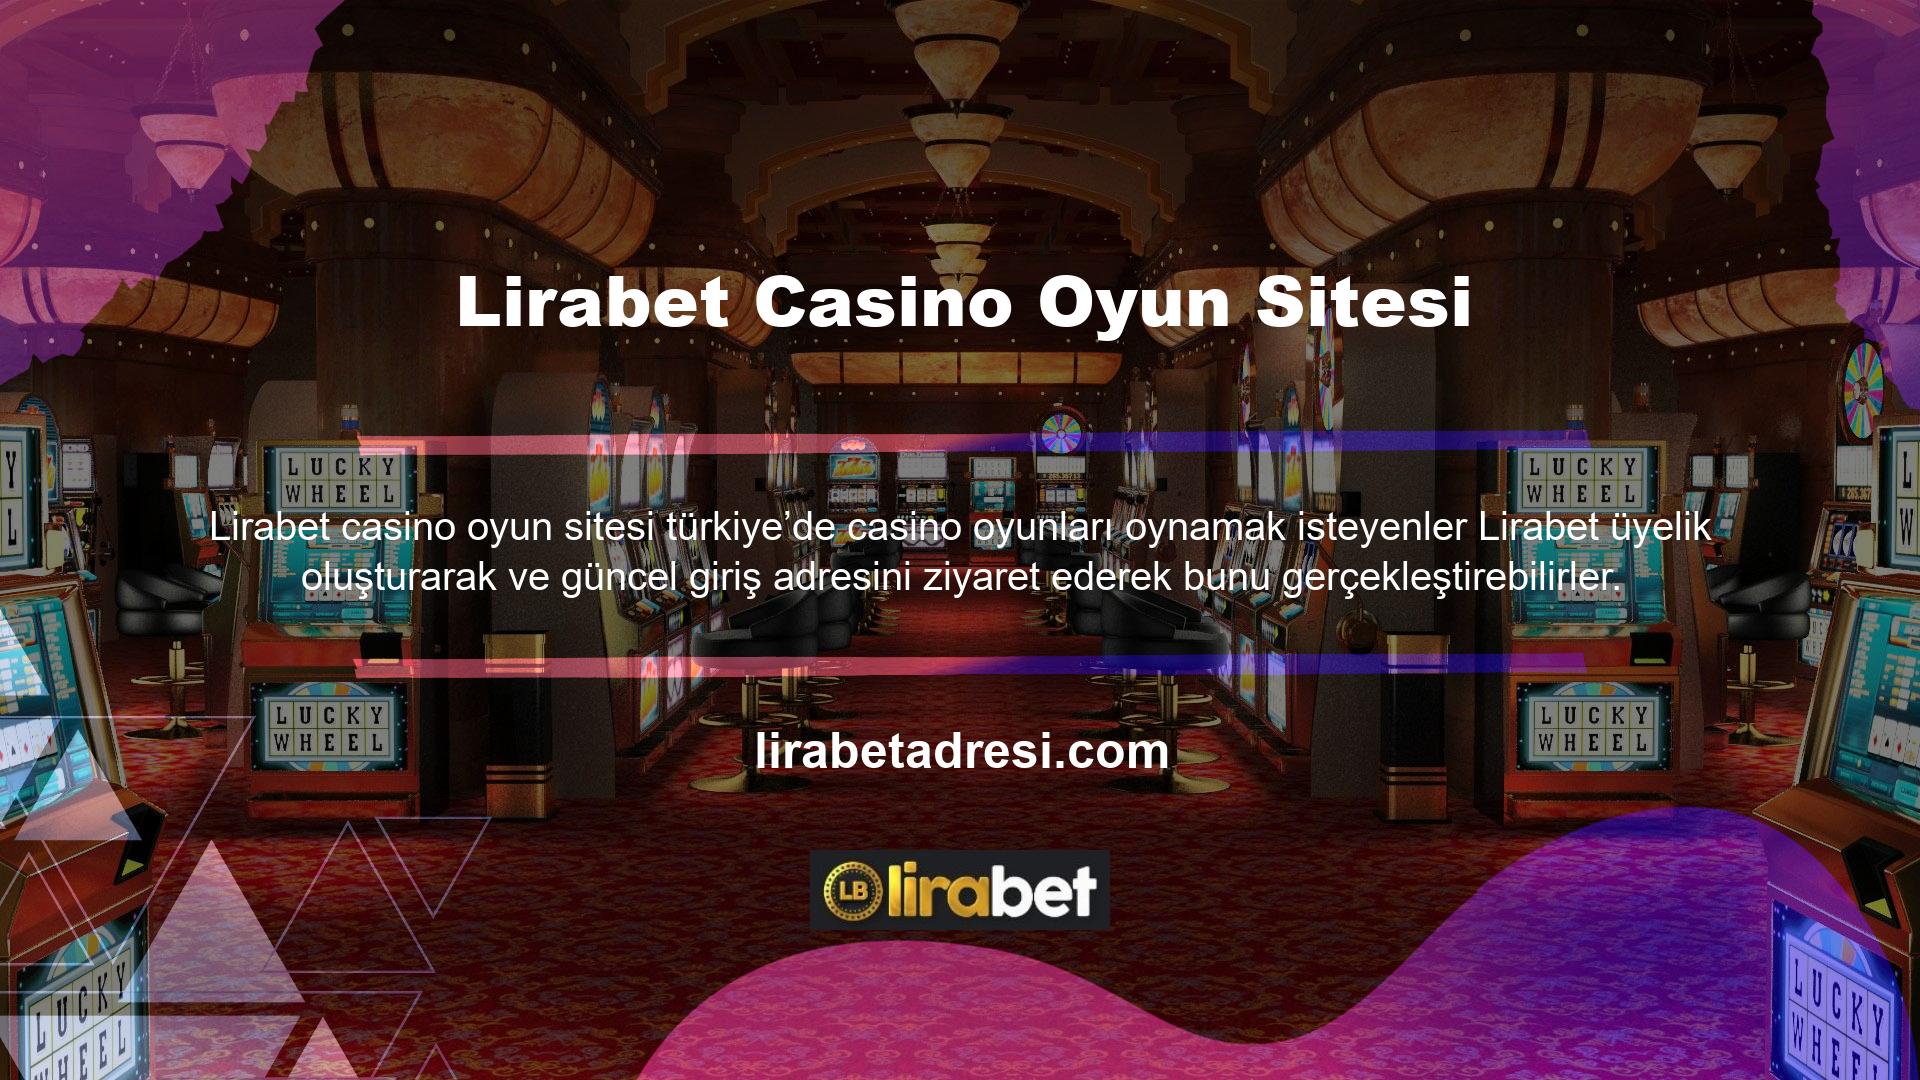 Lirabet casino oyun hizmeti, kullanıcılarına hem canlı casino oyunları hem de slot oyunları sunmaktadır